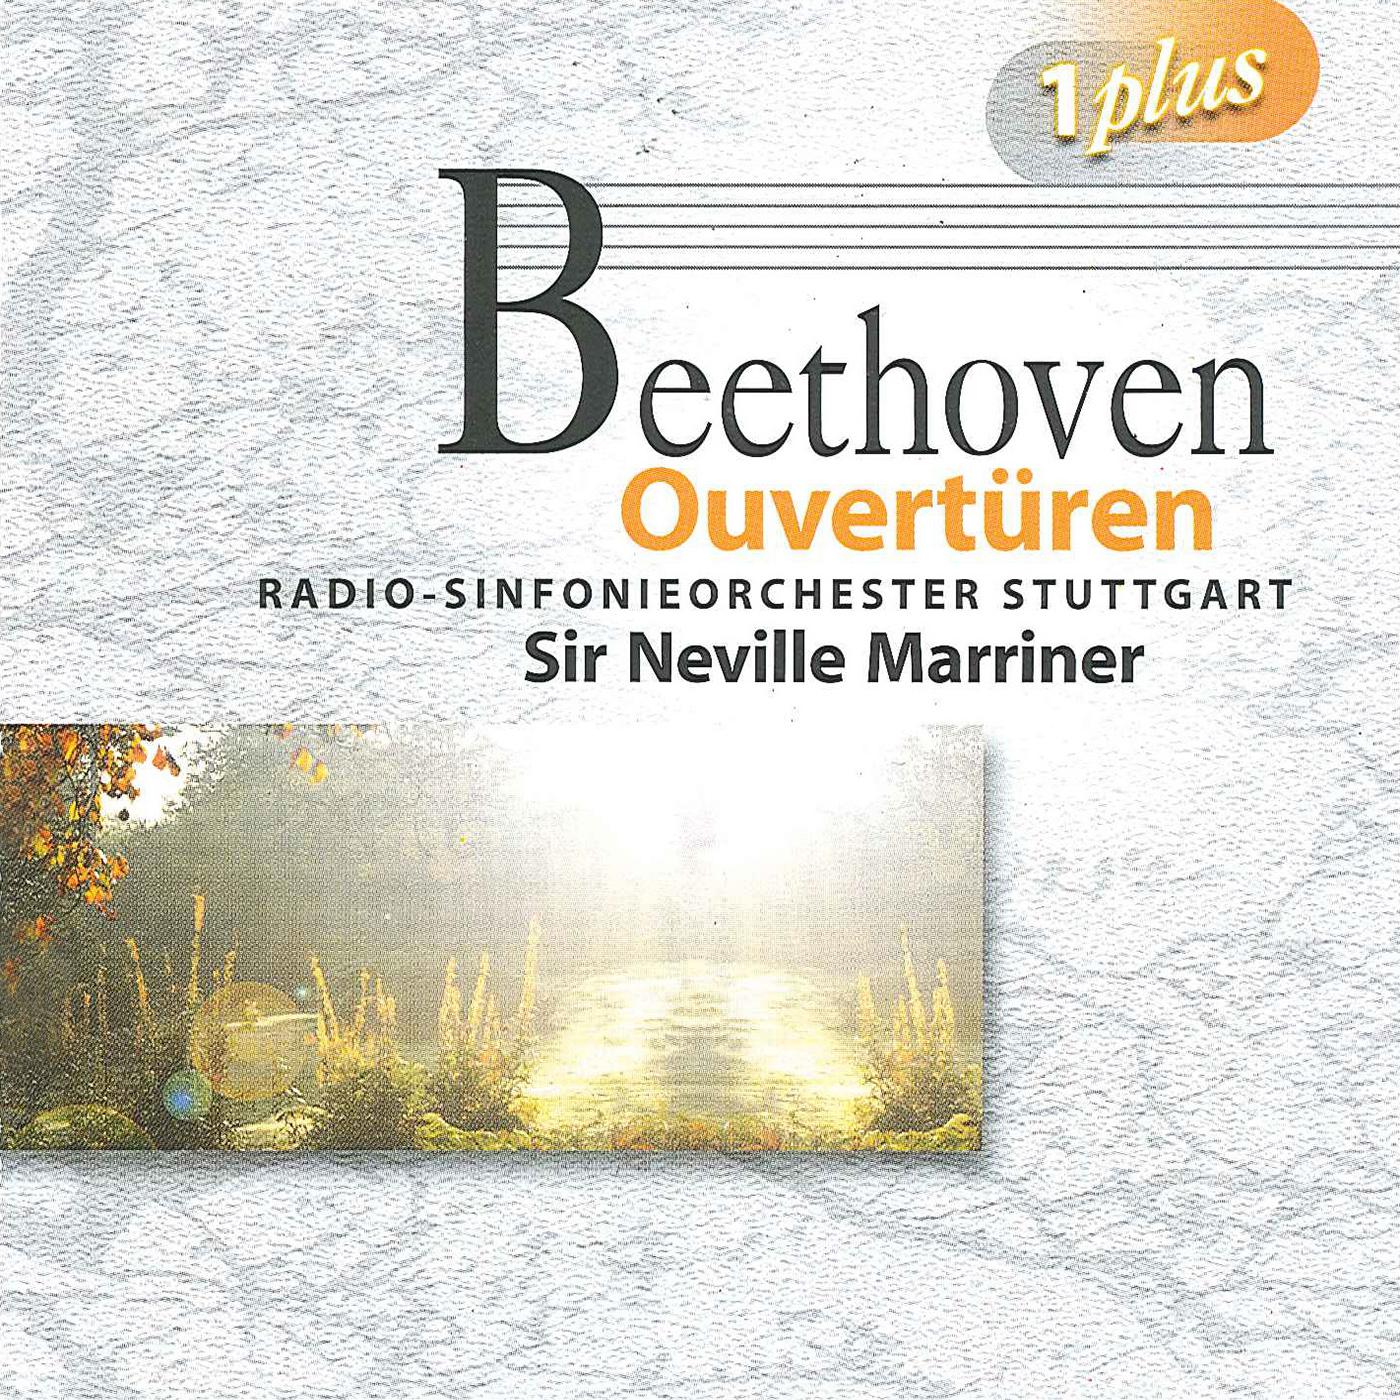 BEETHOVEN, L. van: Overtures (Stuttgart Radio Symphony, Marriner)专辑